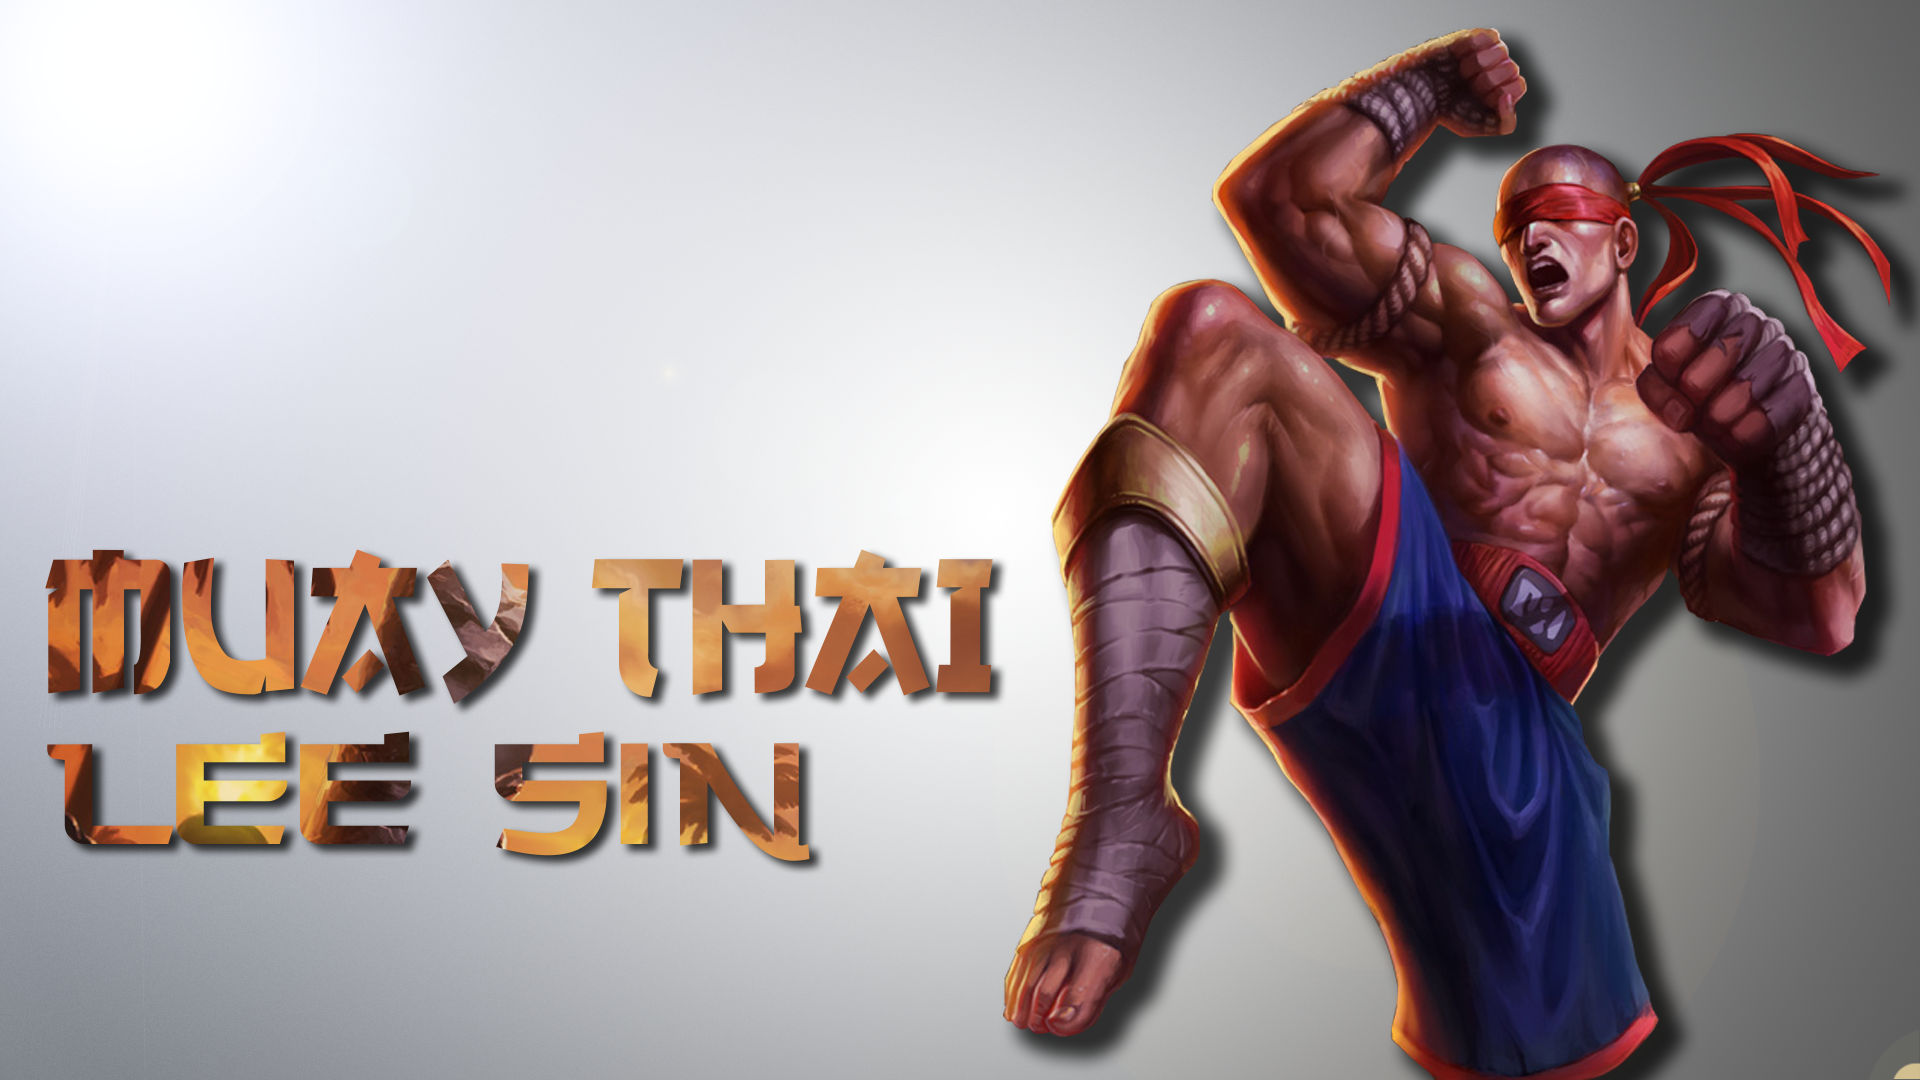 Muay Thai Lee Sin2 By Imzerostar